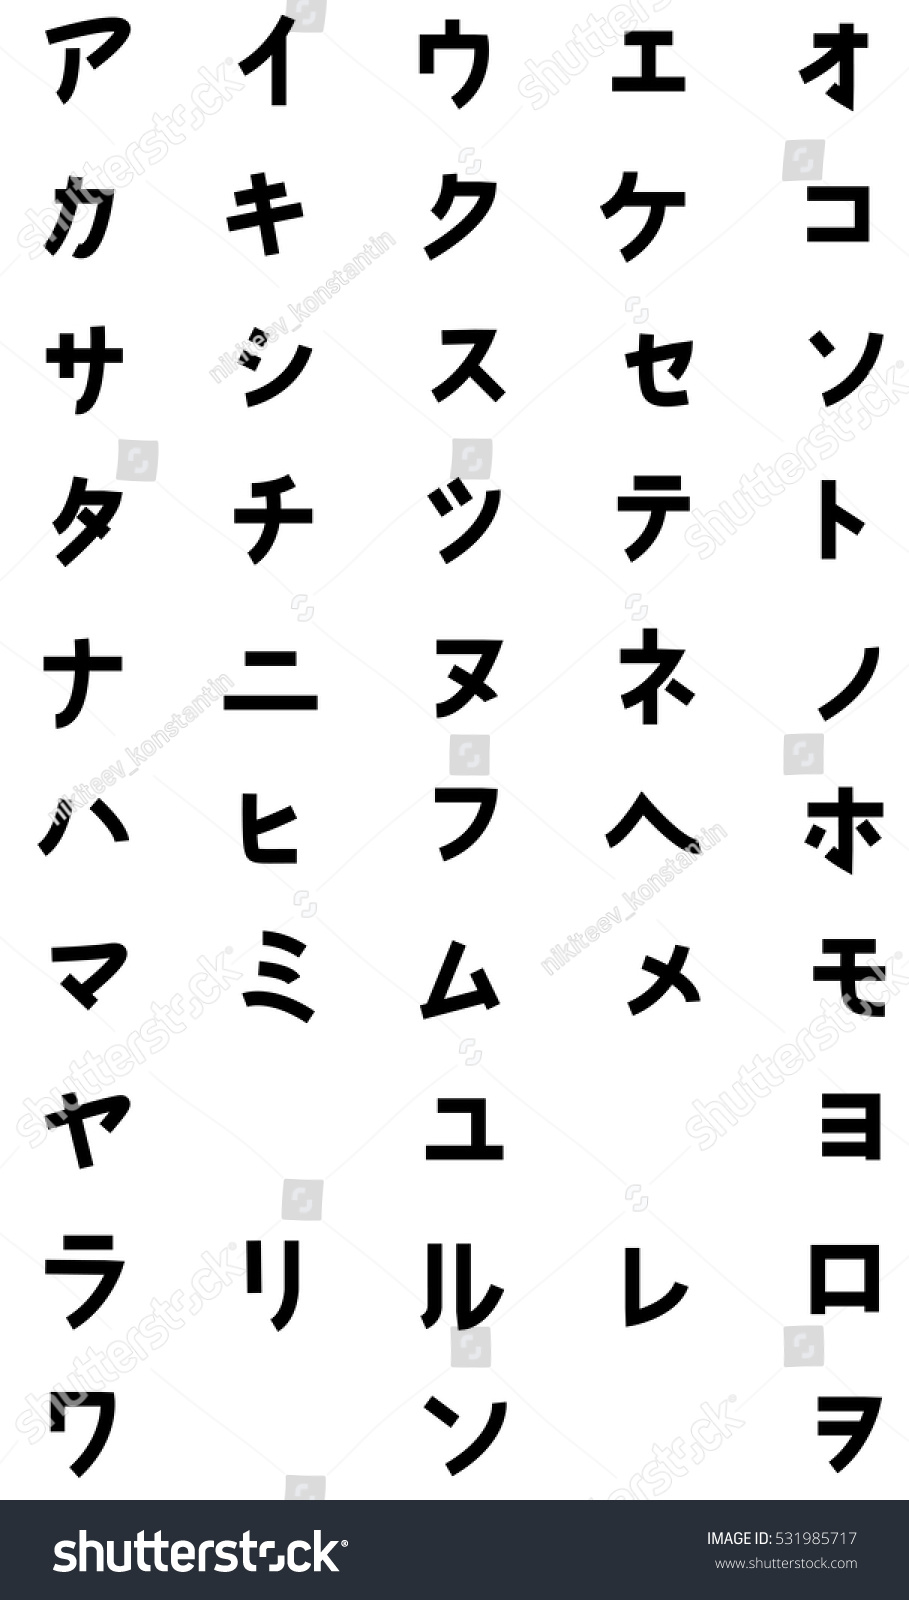 Японская иероглифическая Азбука